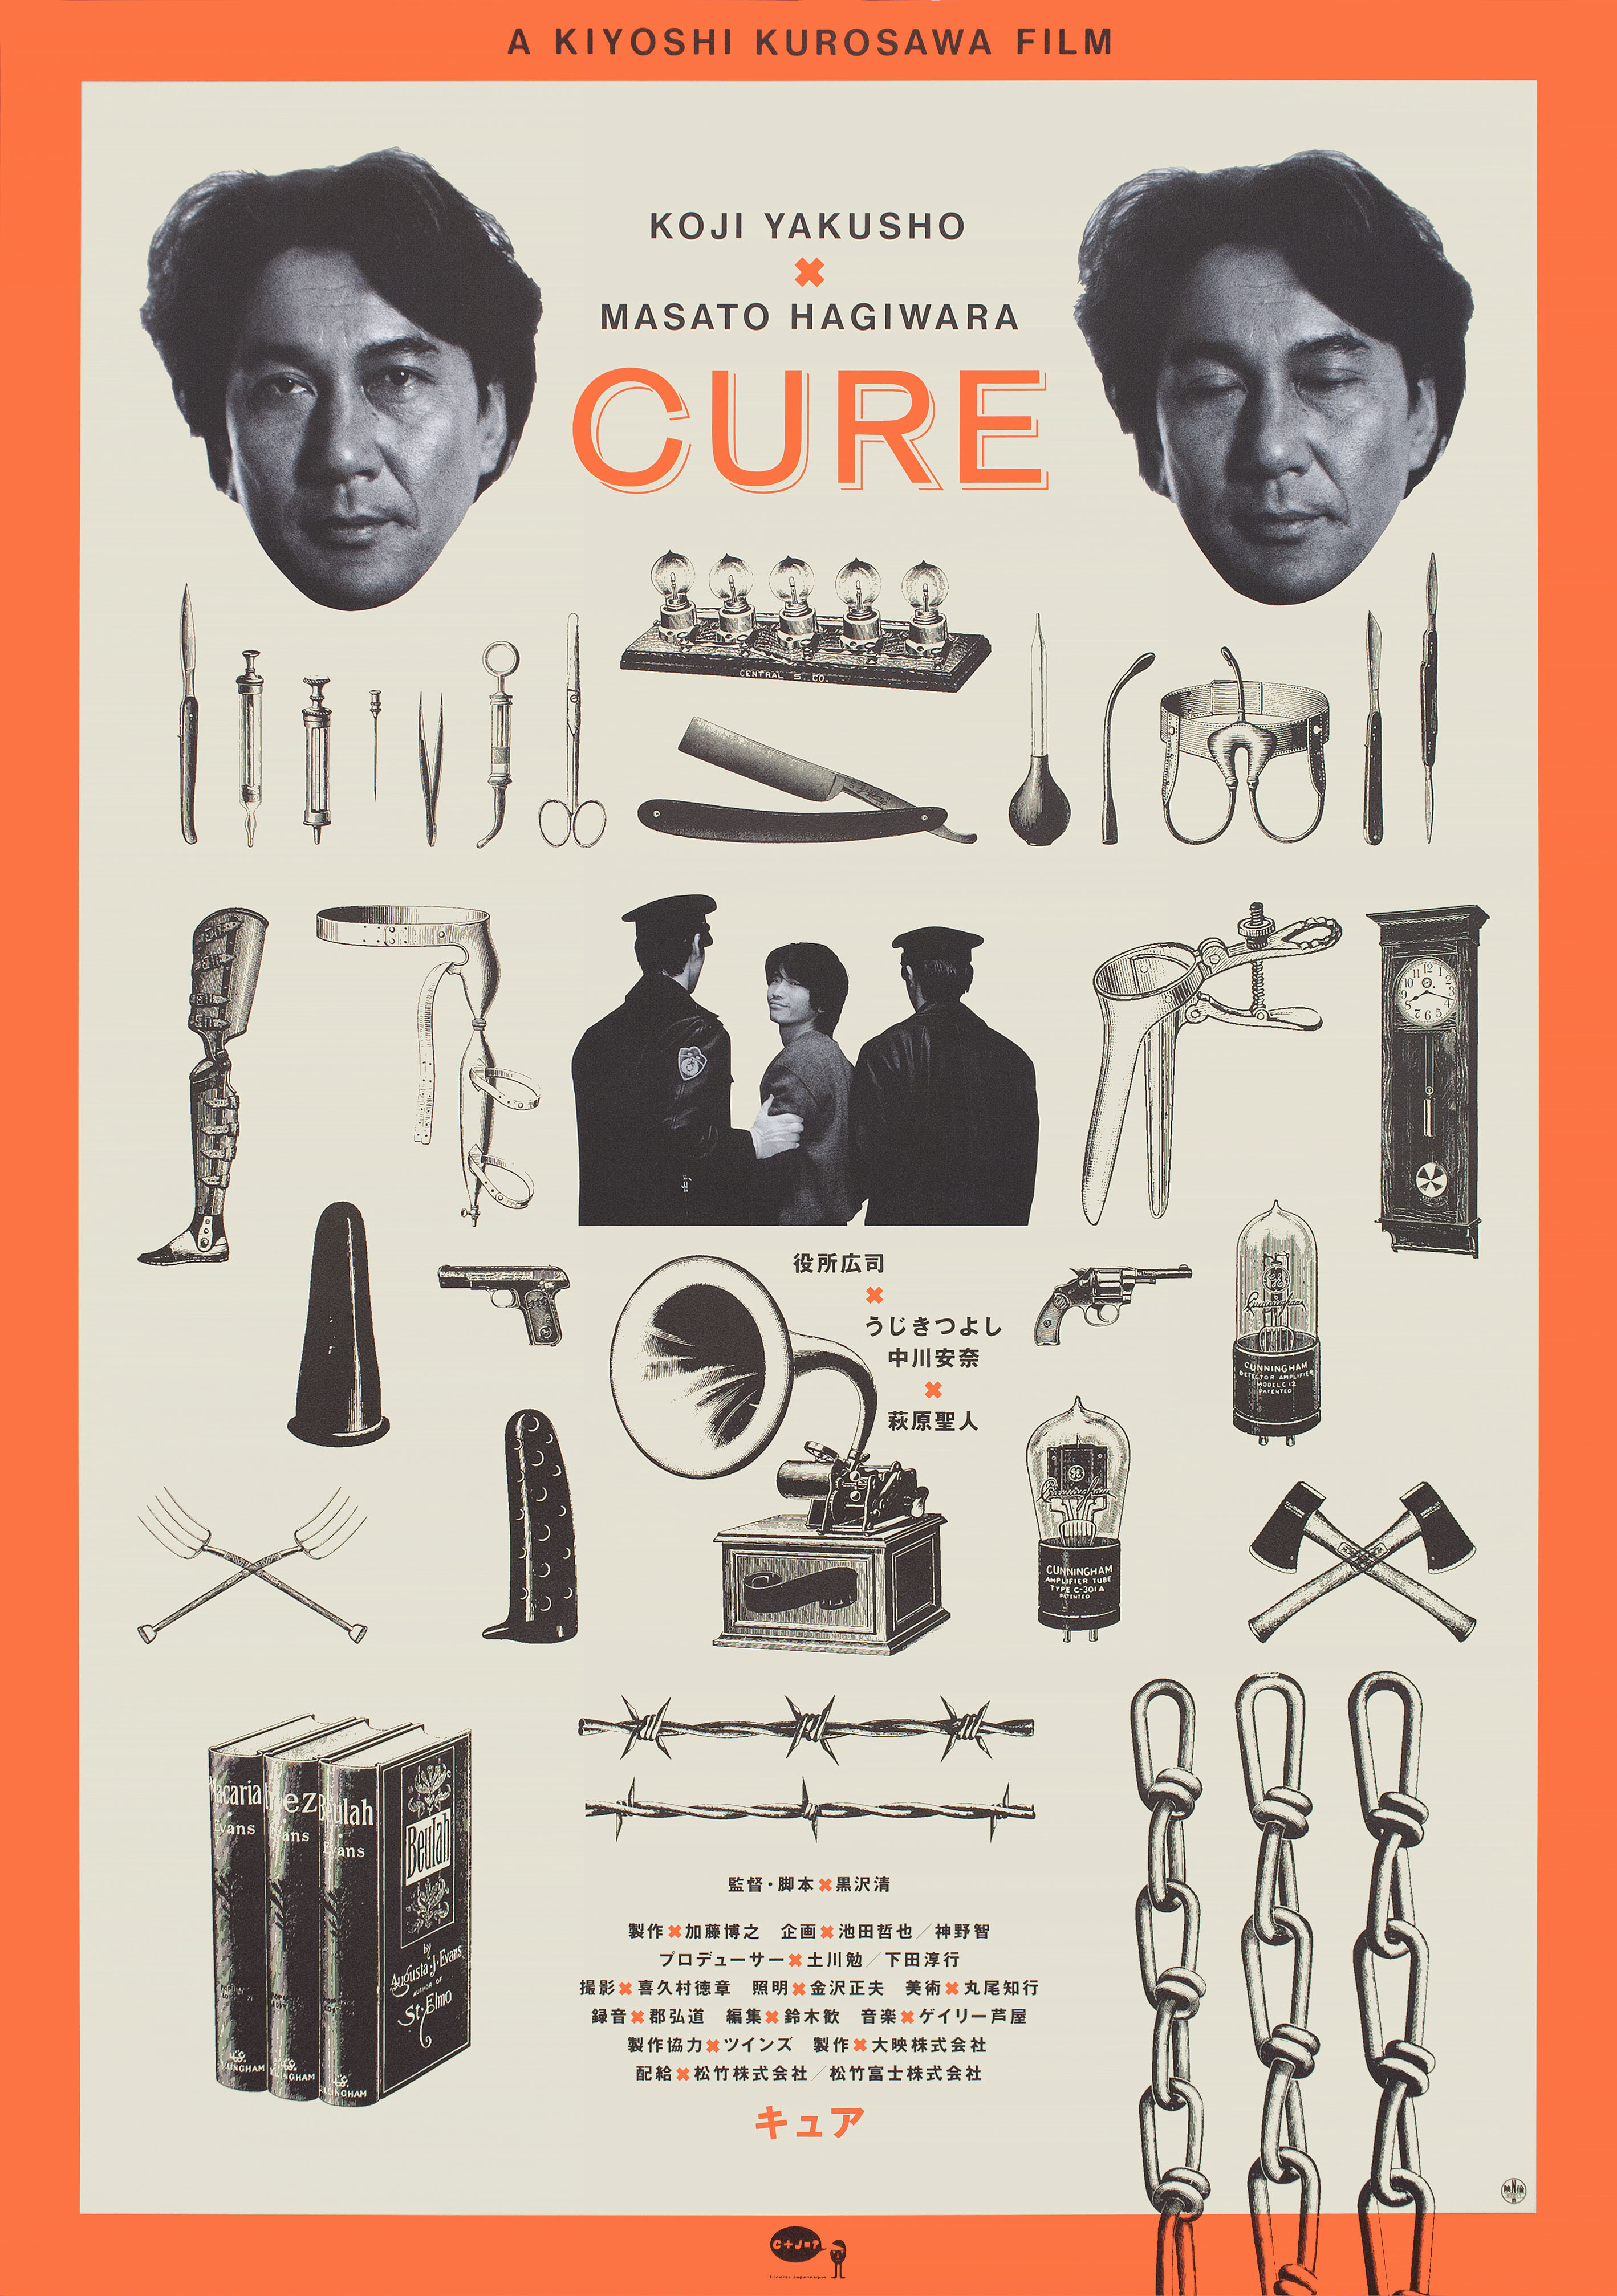 Исцеление (Cure, 1997), режиссёр Киёси Куросава, японский постер к фильму (ужасы, 1997 год)